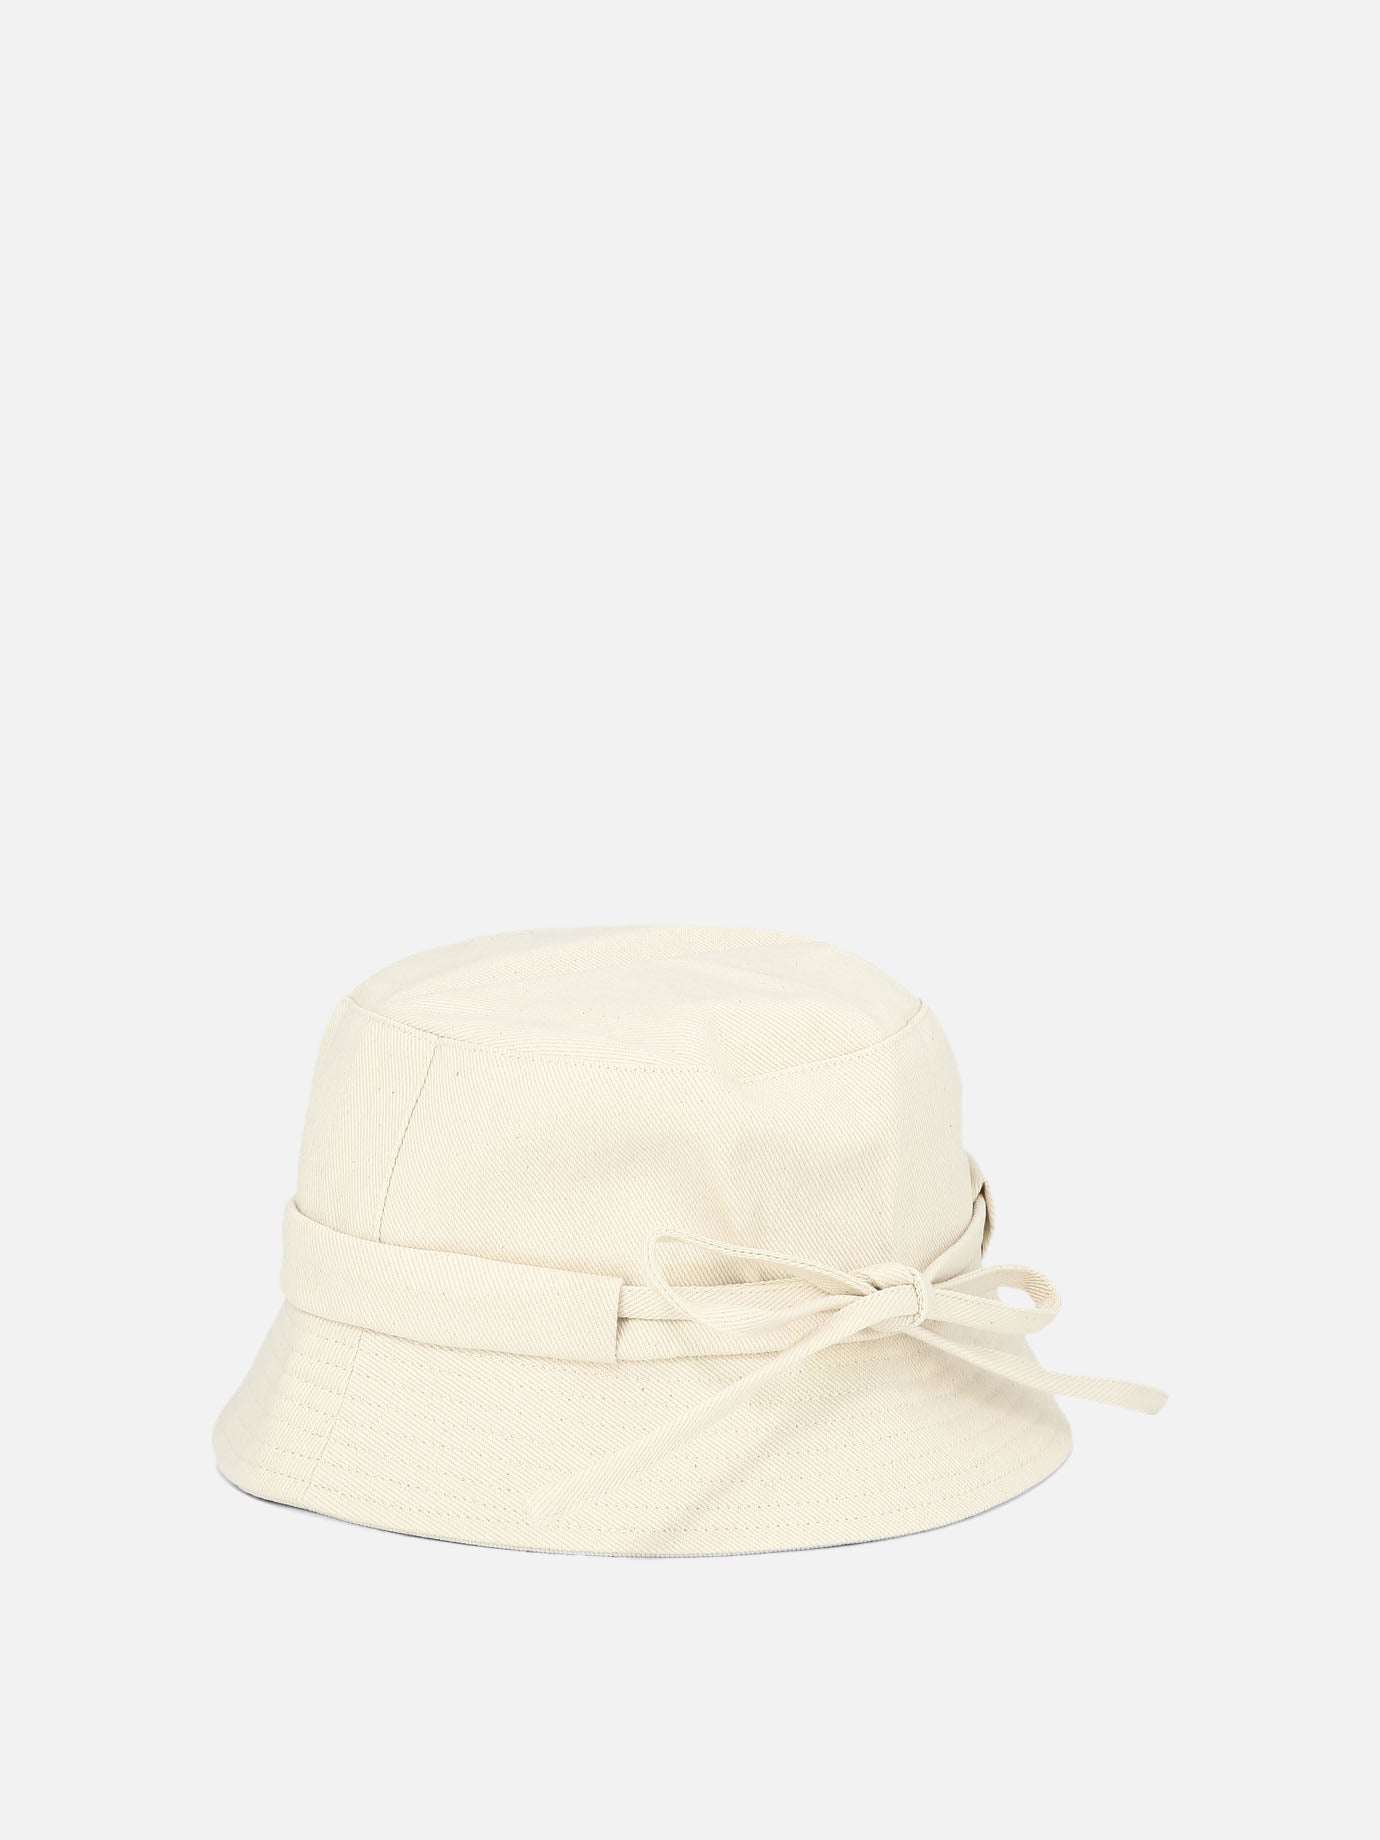 "Le bob Gadjo" hat